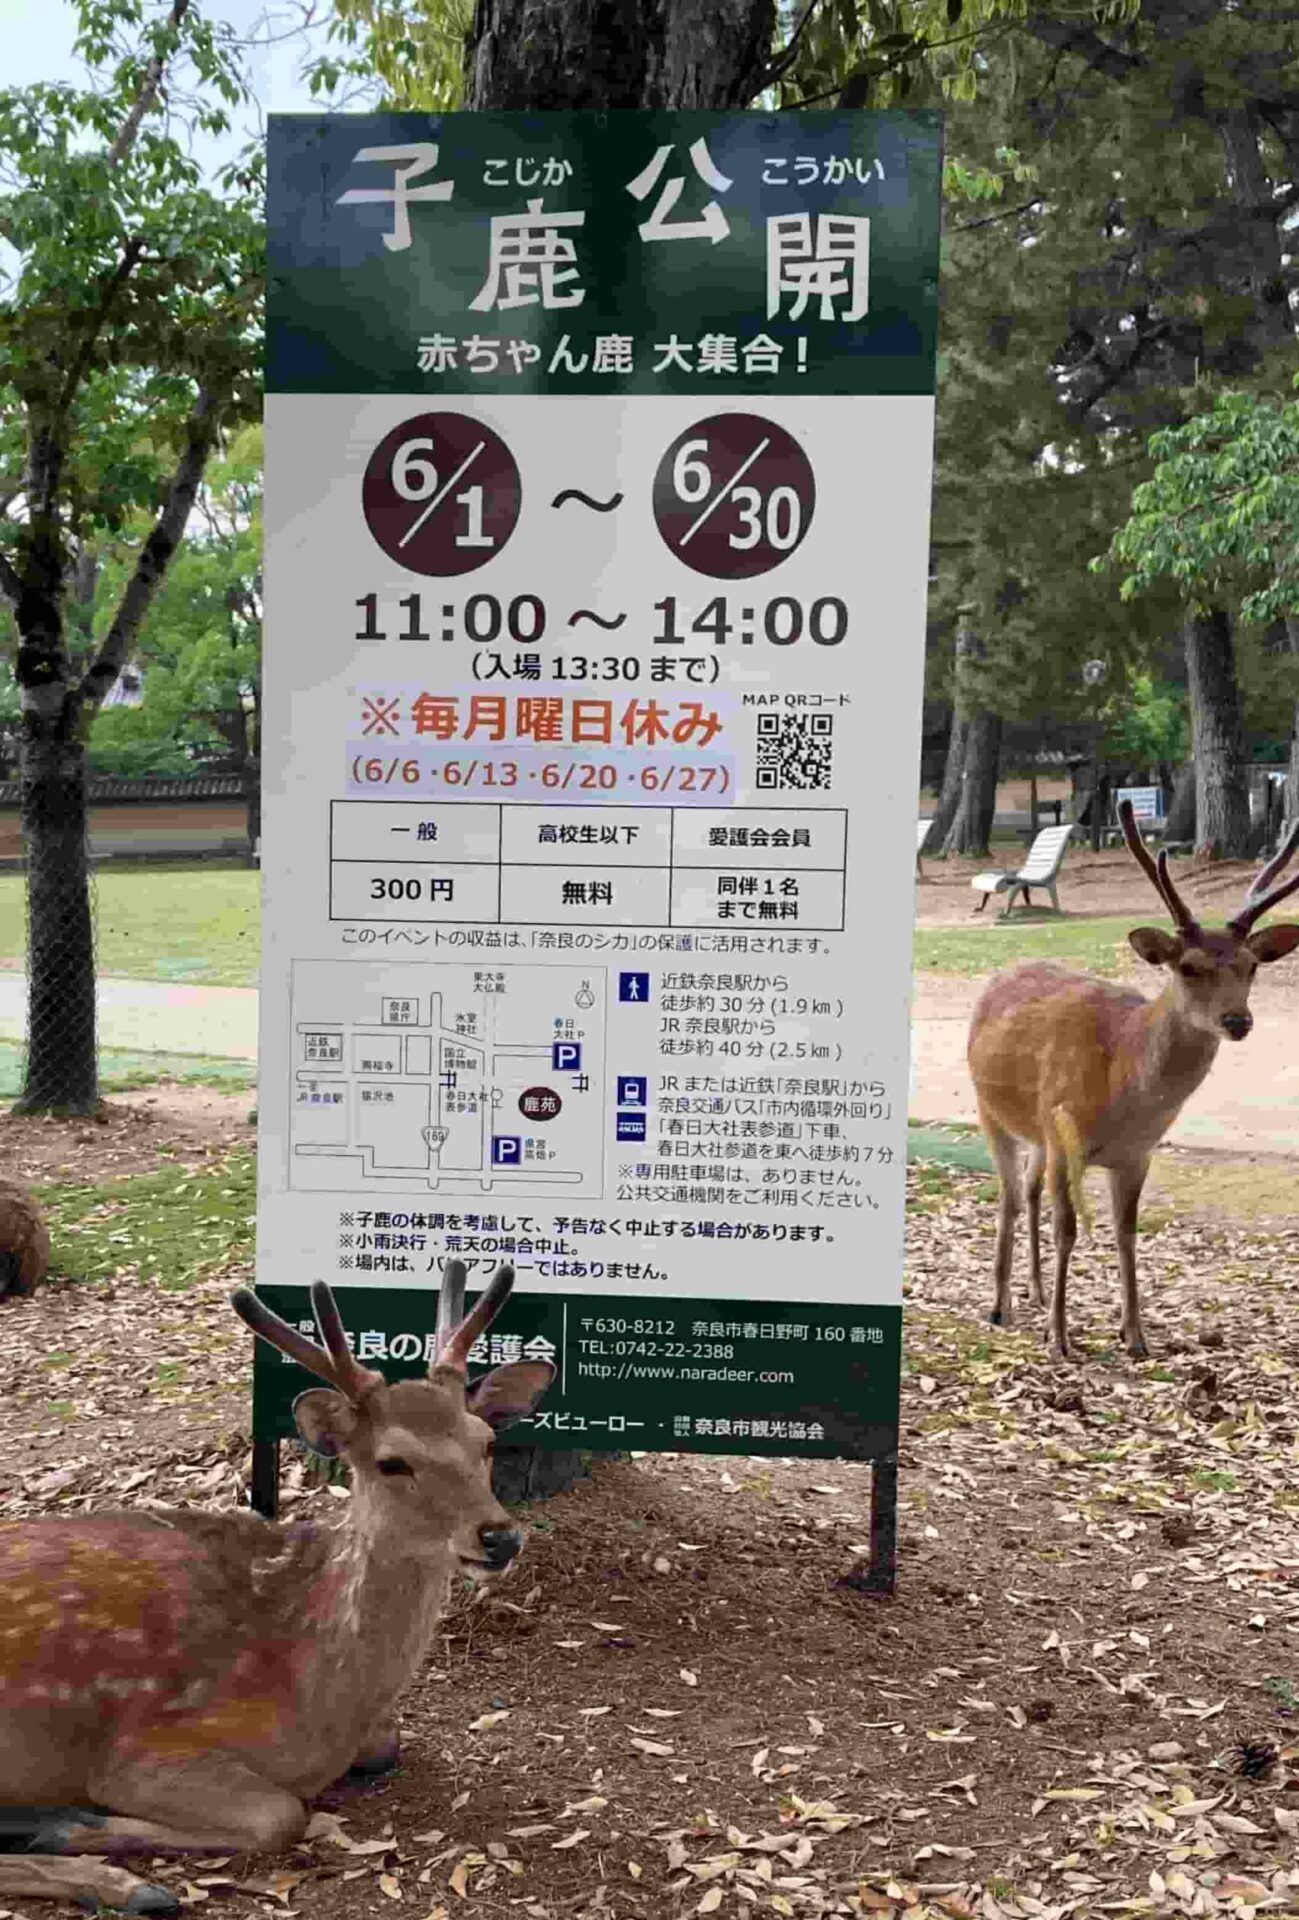 奈良公園の小鹿公開2022年の案内